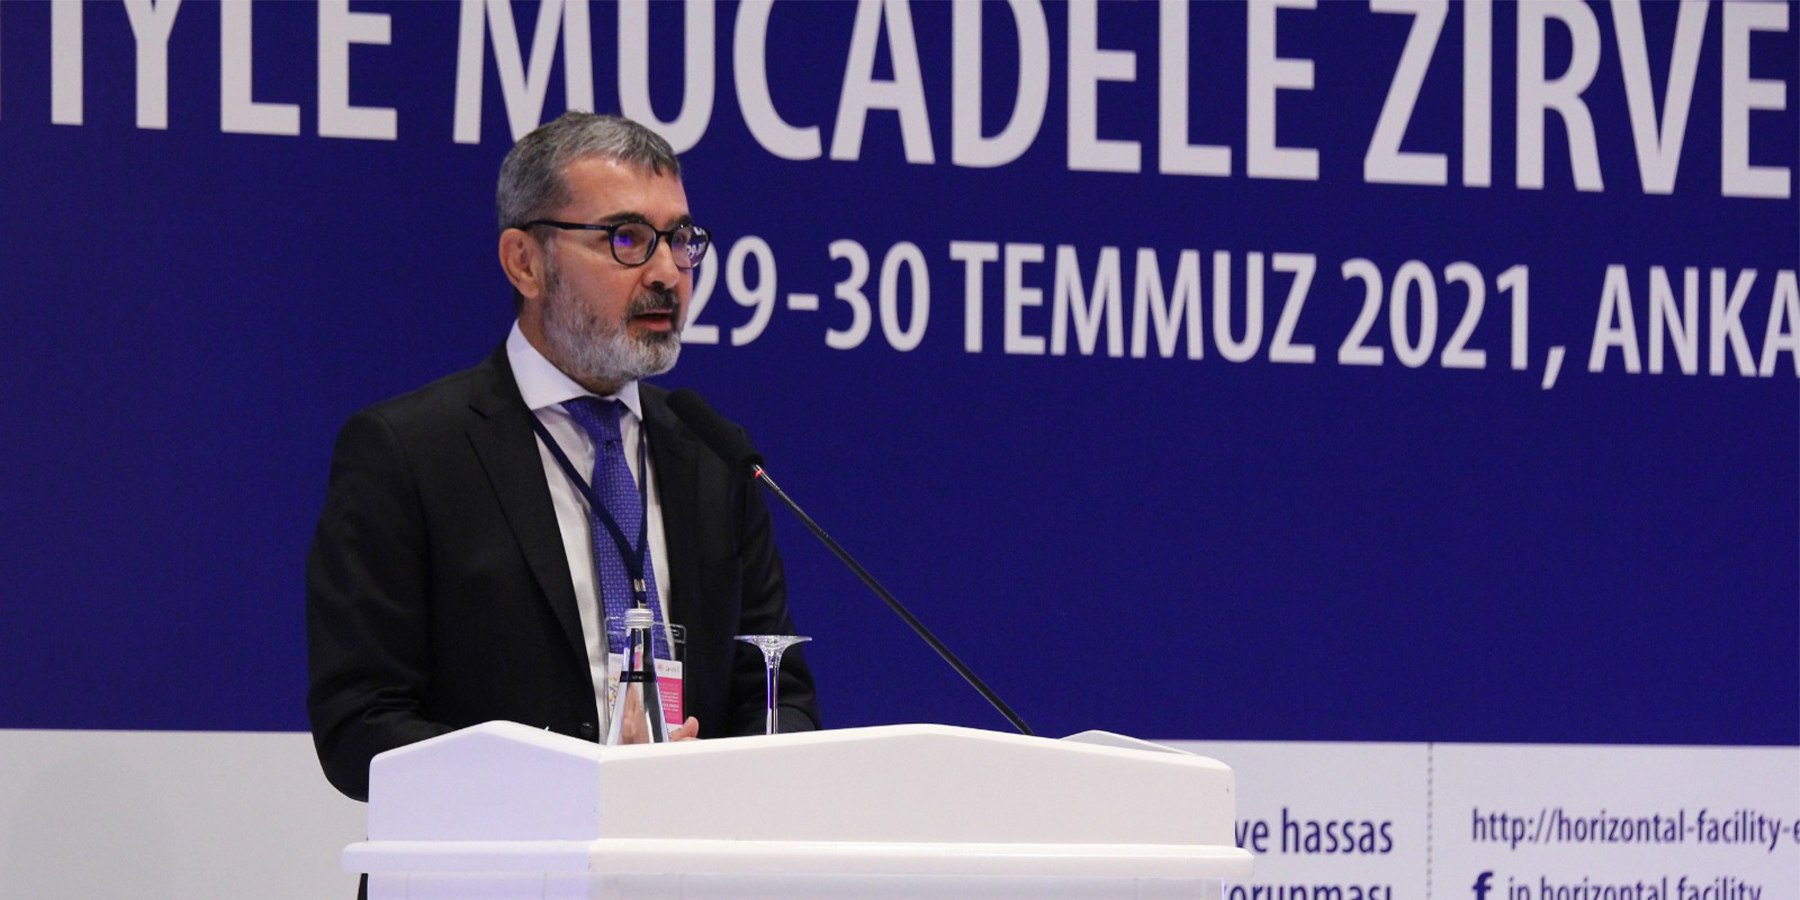 Başkan Prof. Dr. Muharrem Kılıç, İnsan Ticaretiyle Mücadele Zirvesi'ne Katıldı